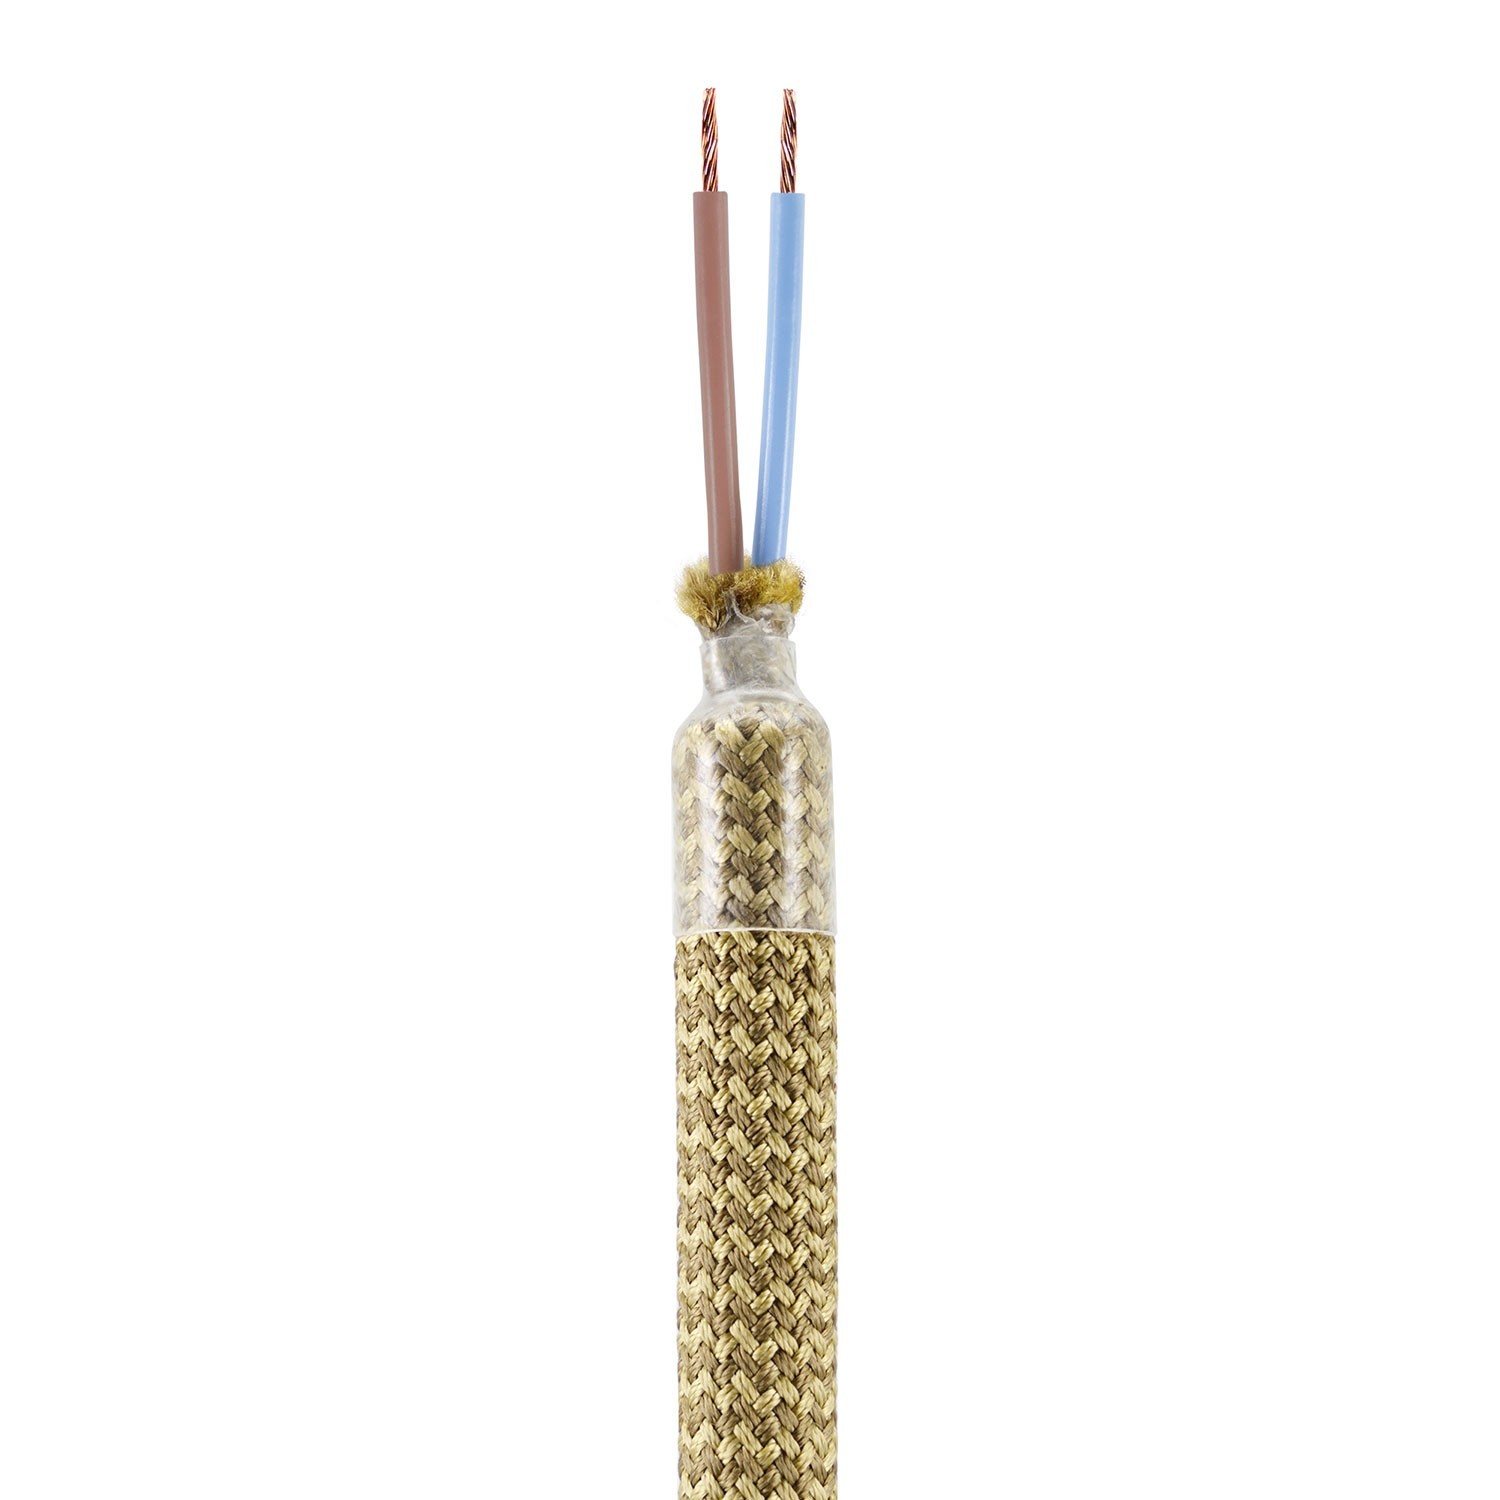 Creative Flex készlet rugalmas csővel, Bronz RM73 szövet borítással, fém csatlakozókkal